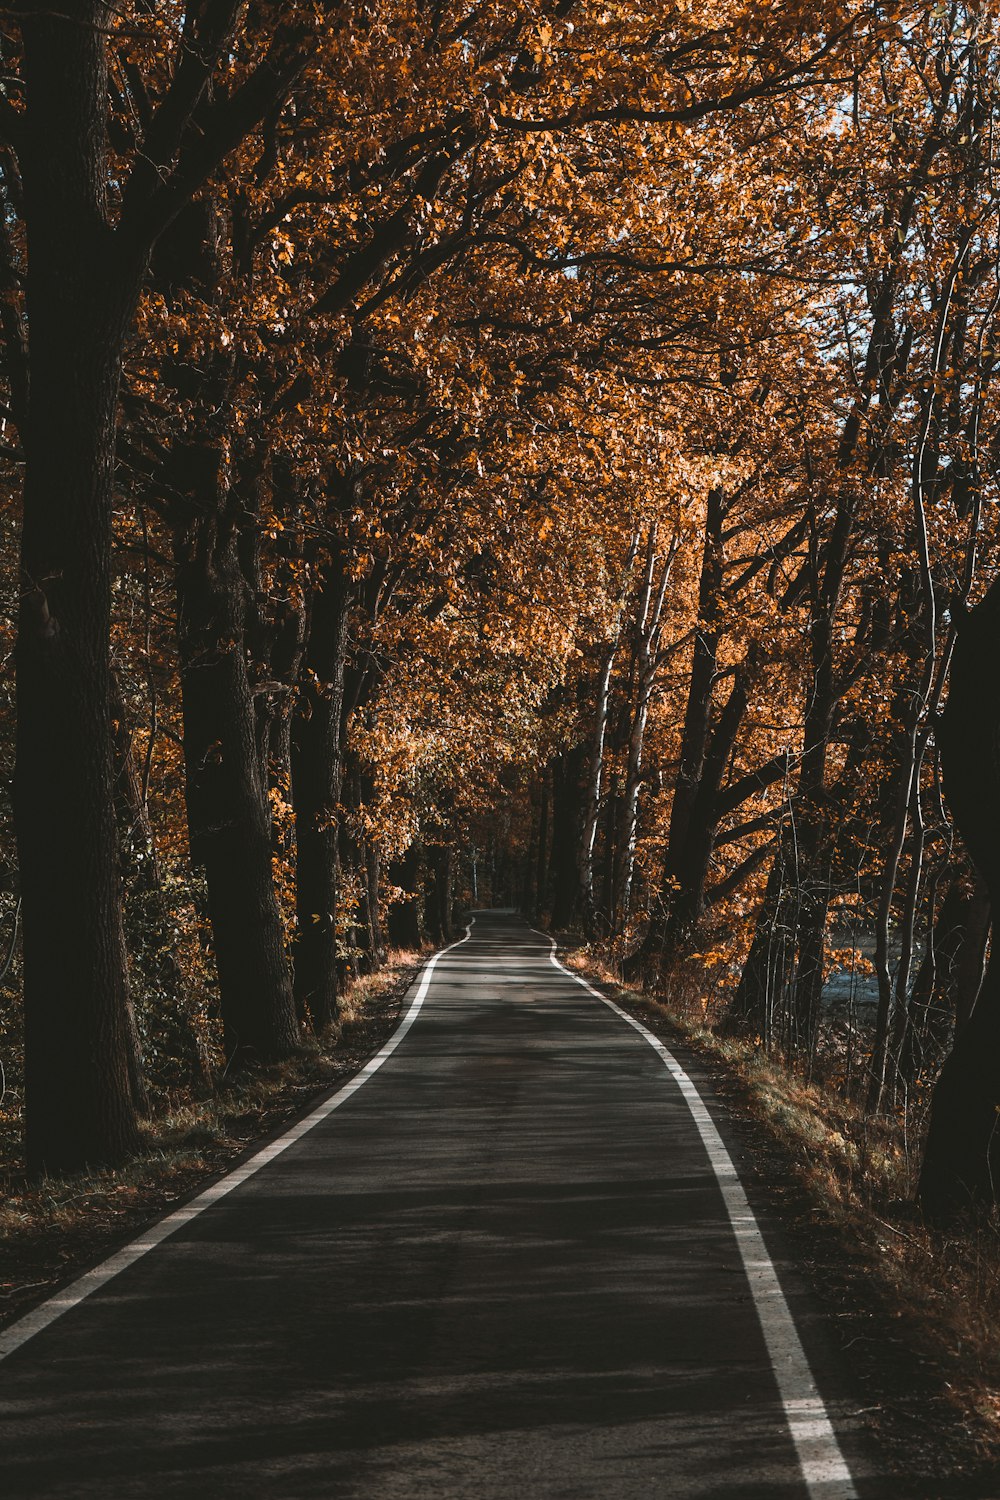 Una strada vuota circondata da alberi con foglie arancioni